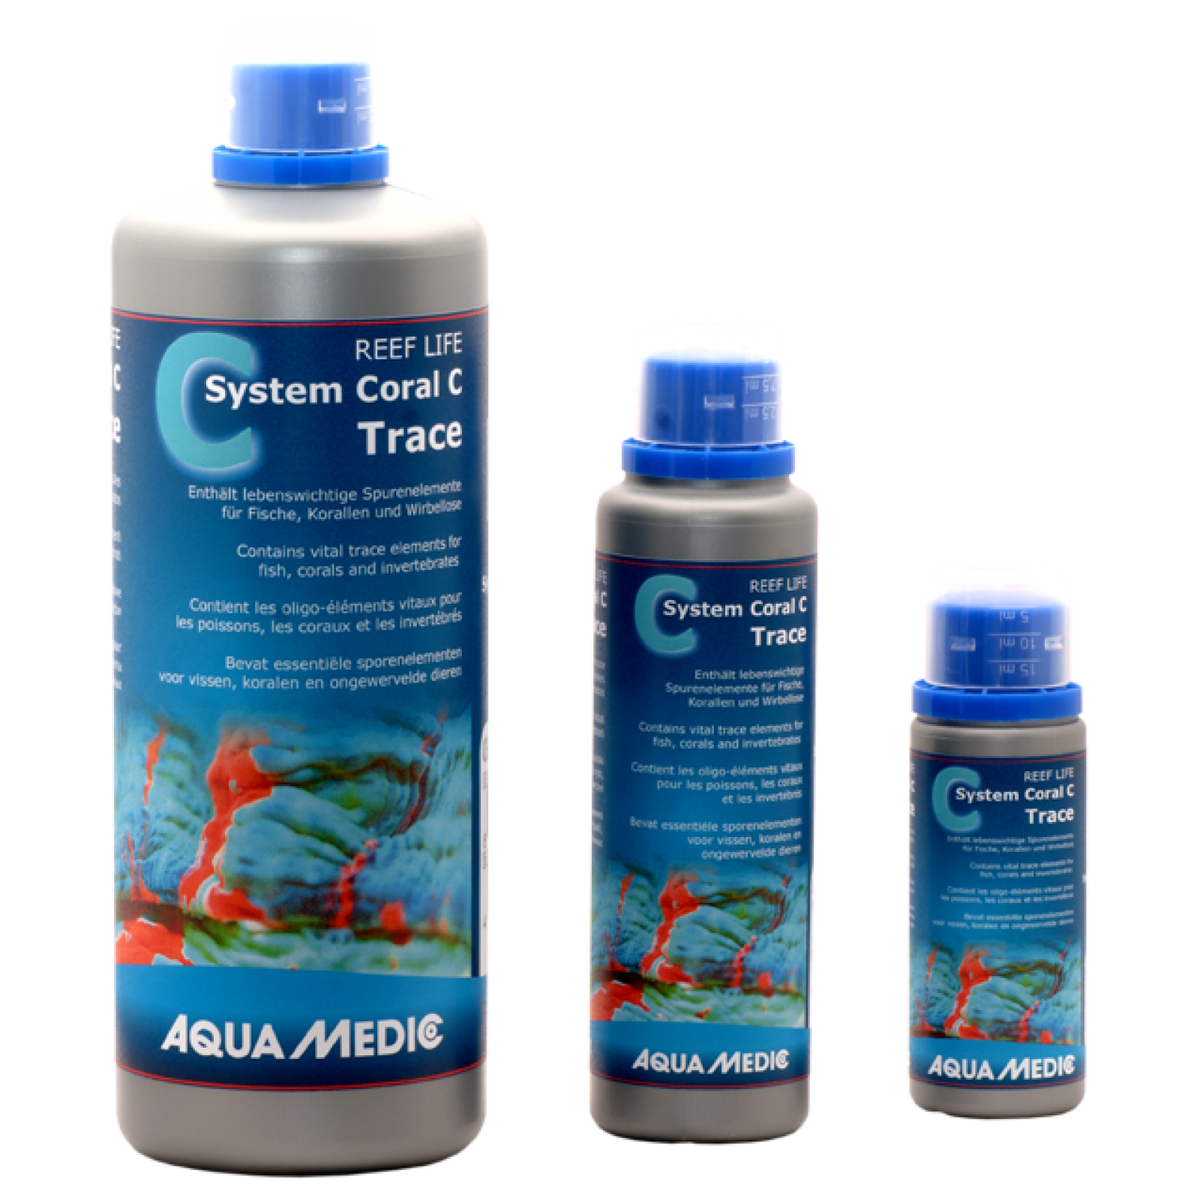 Aqua Medic Reef Life System Coral C Trace